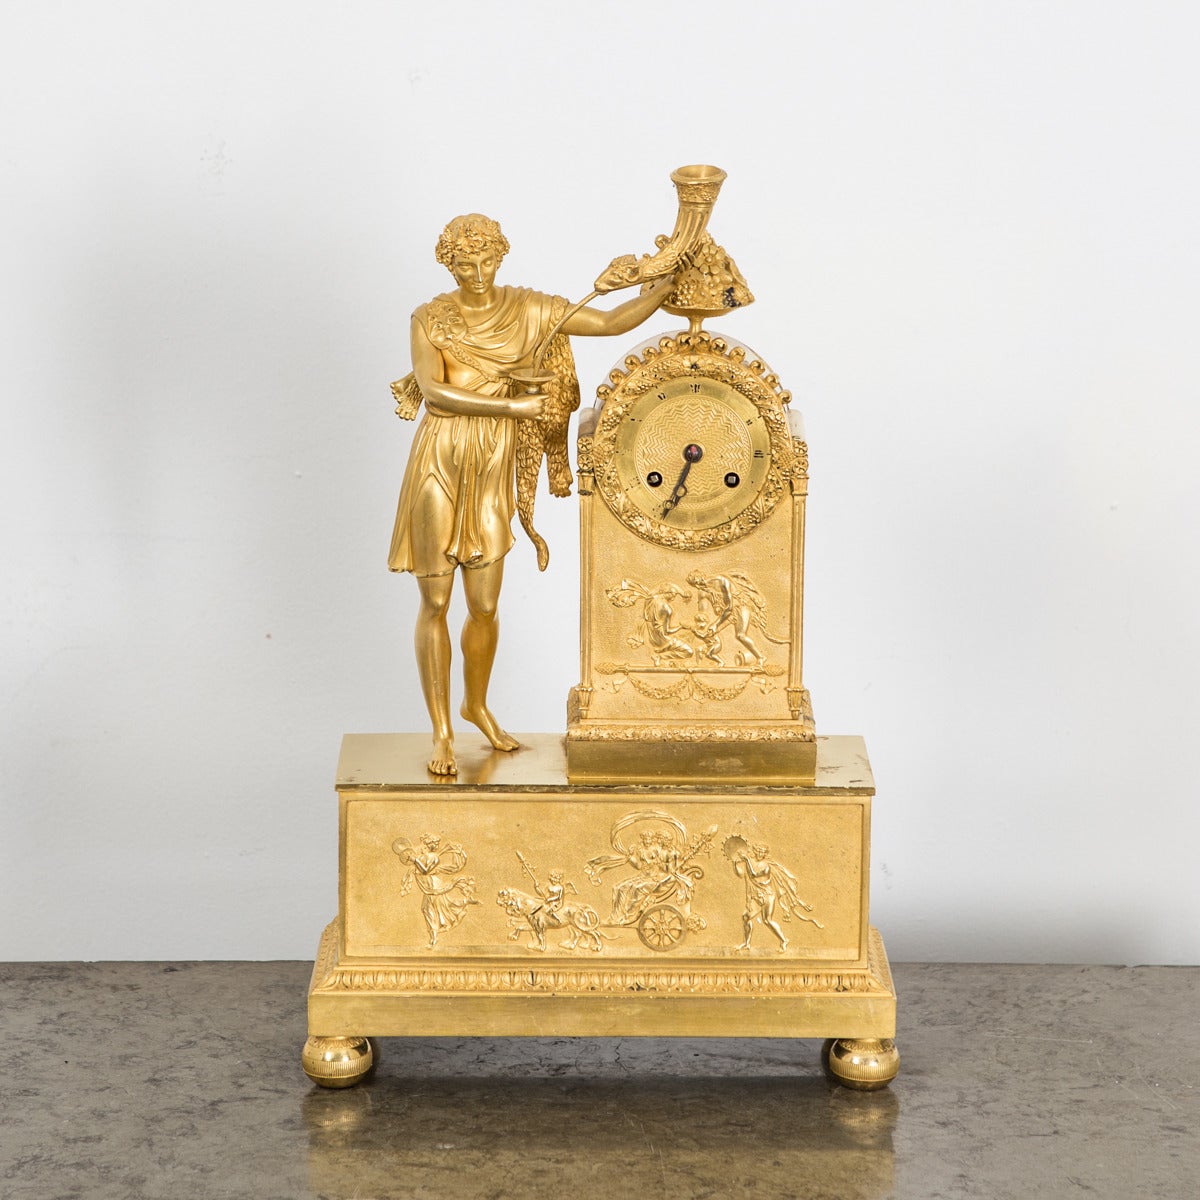 Uhr Mantel vergoldete Bronze Neoklassische Empire Französisch 19. Jahrhundert Frankreich. Ein französischer Mantel aus vergoldeter Bronze, verziert mit neoklassischen Symbolen wie einem römischen Mann in einer Toga, der ein Horn trägt - das Symbol